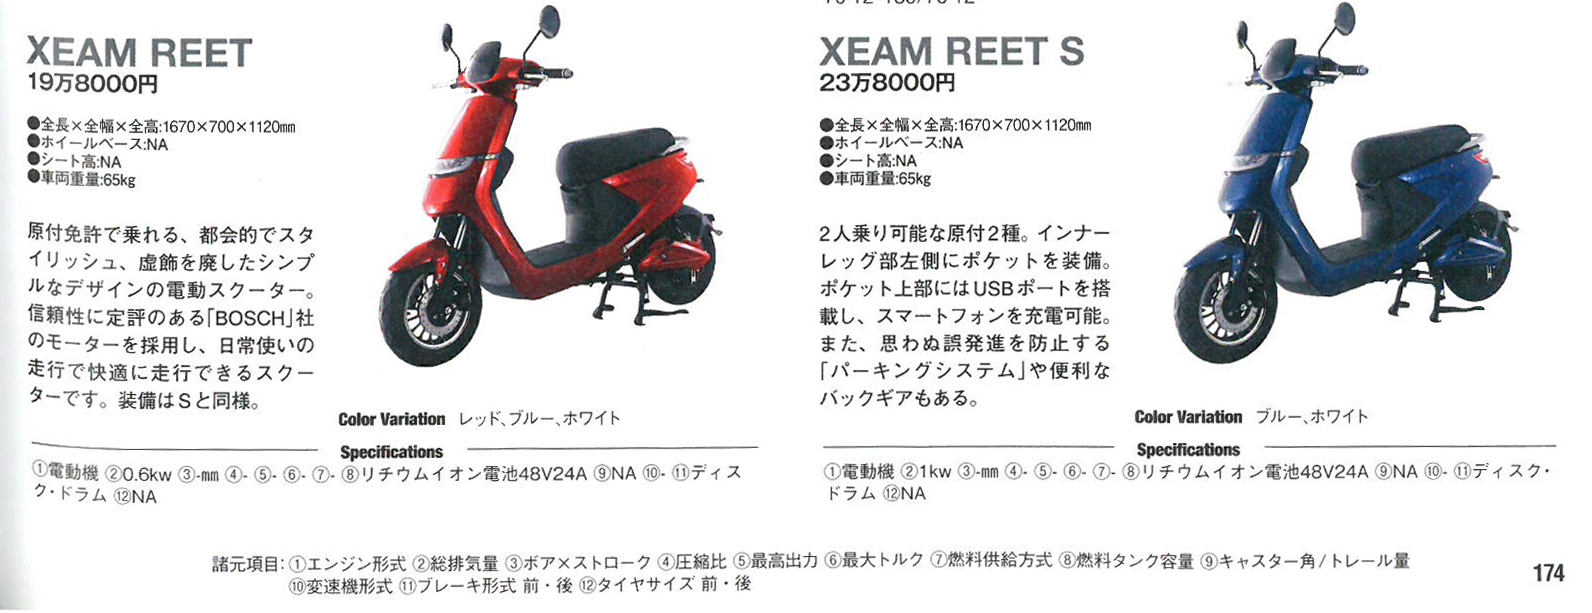 「JAPAN BIKE OF THE YEAR 2019」にXEAM 「REET / REET S」が掲載されています